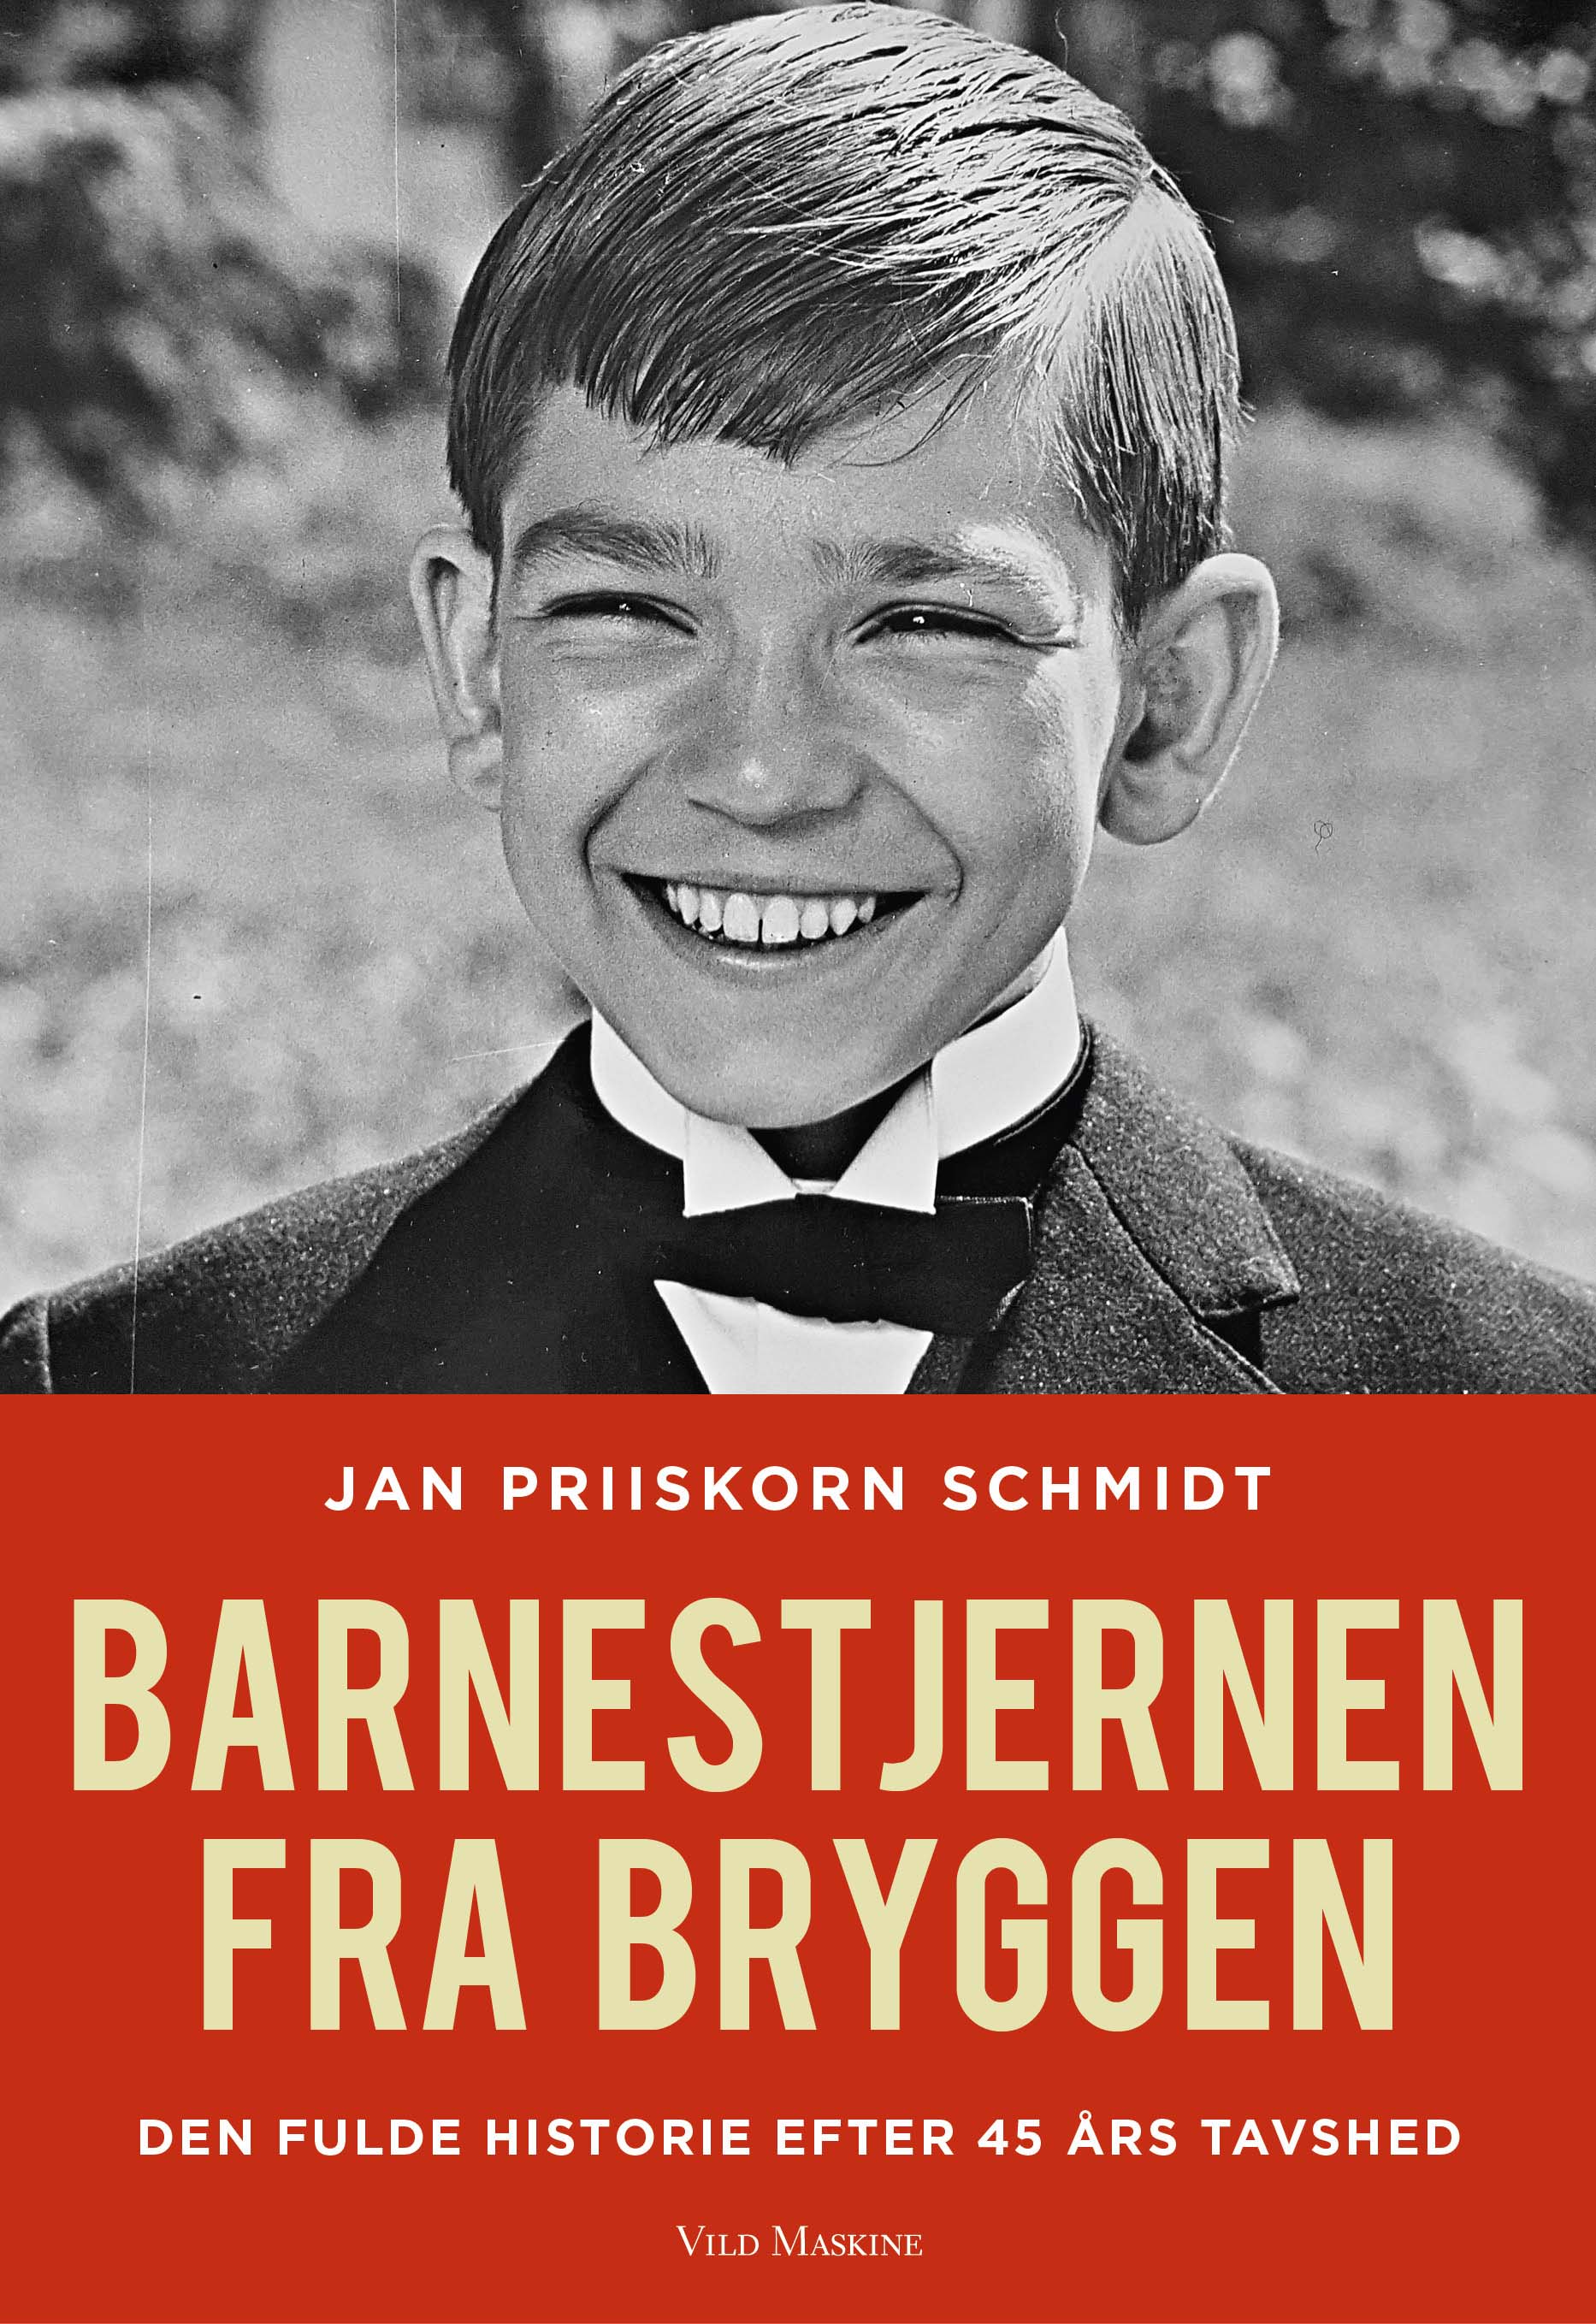 Barnestjernen fra Bryggen, udkommer 27. september 2017. Omslag: Simon Lilholt, Imperiet. Kan forudbestilles i boghandlerne allerede nu.